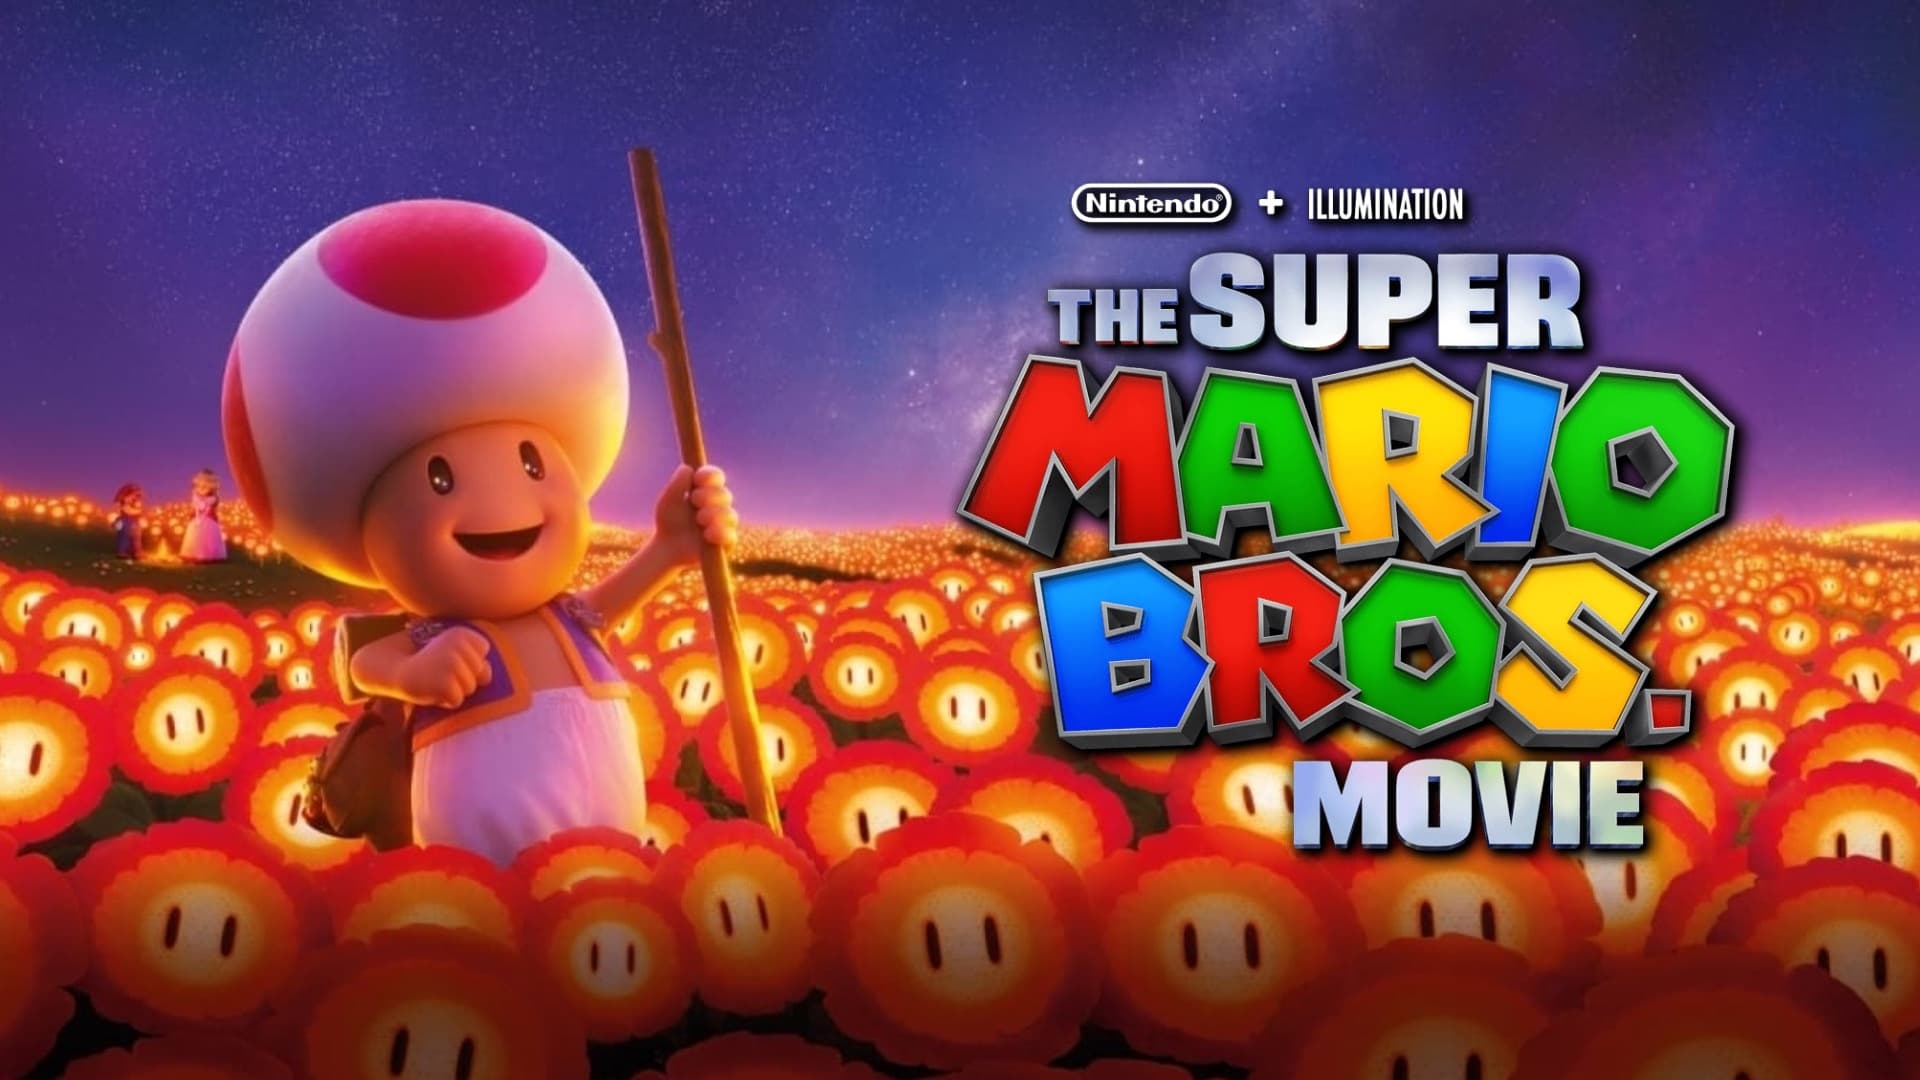 Super Mario Bros: Filmul (2023)